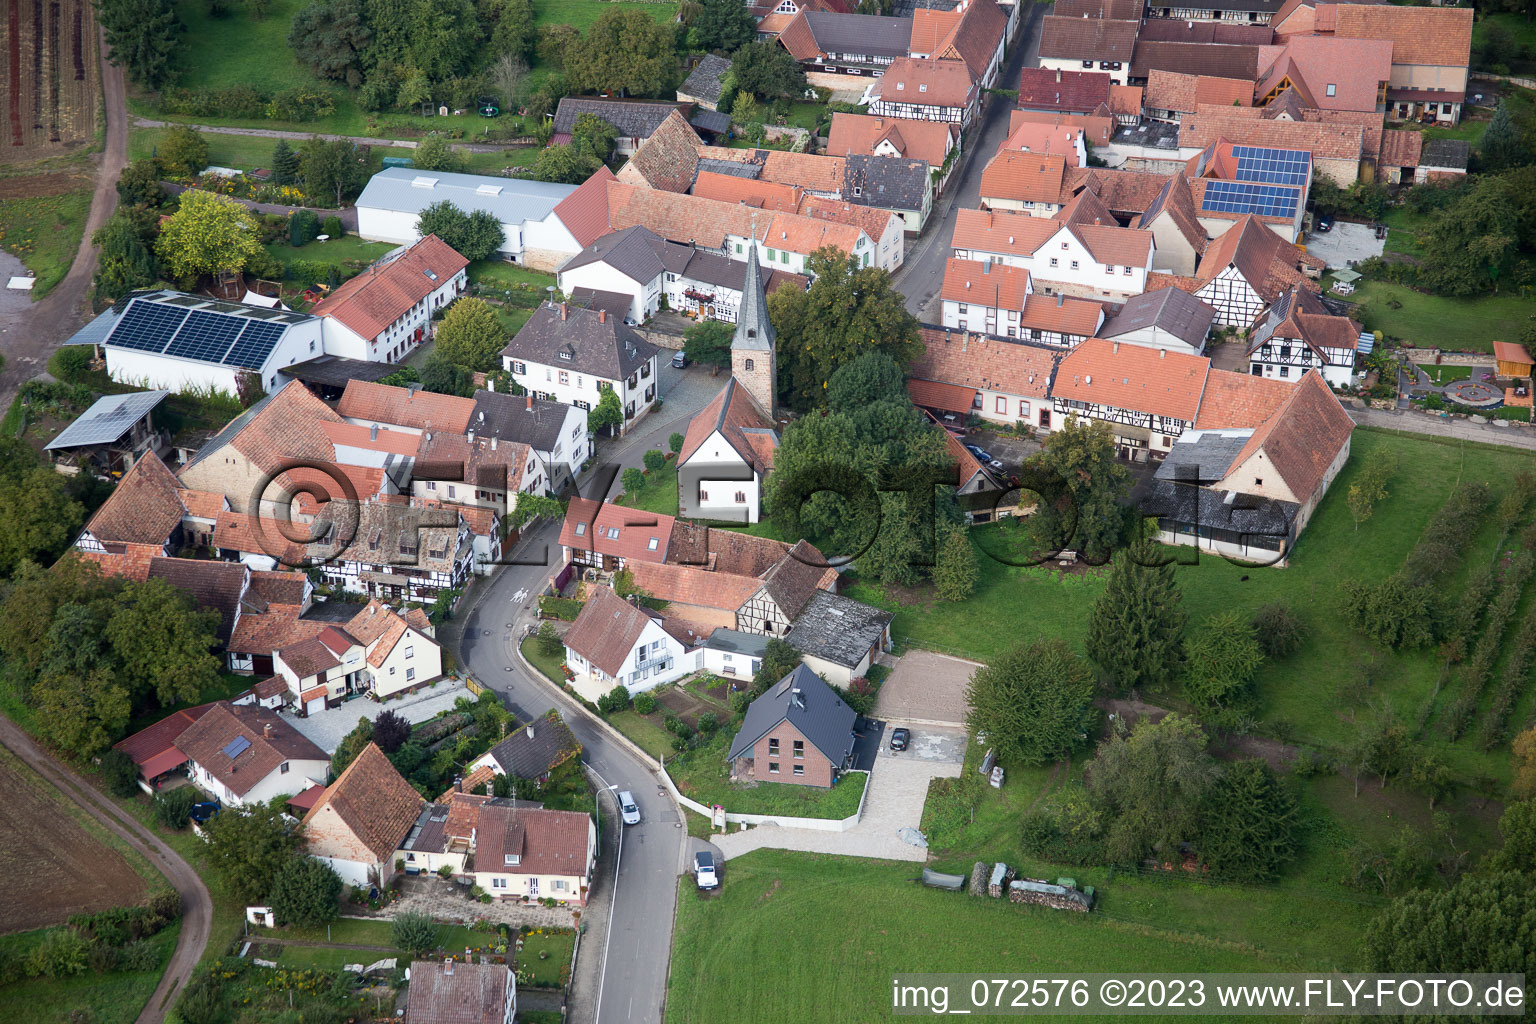 District Klingen in Heuchelheim-Klingen in the state Rhineland-Palatinate, Germany out of the air